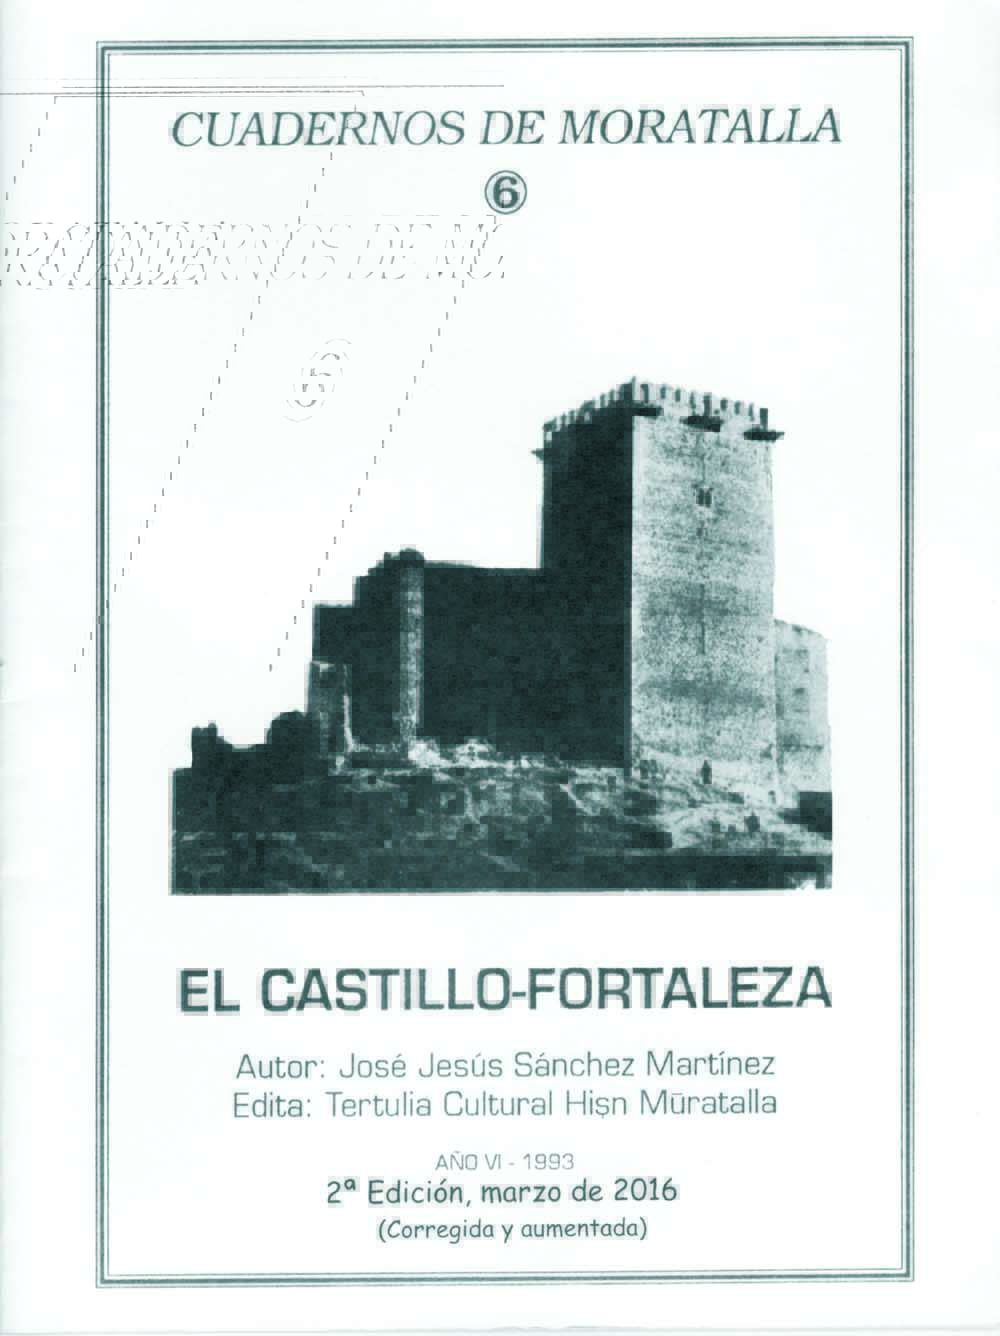 Reeditado “El Castillo-Fortaleza” del cronista de Moratalla Jesús Sánchez Martínez